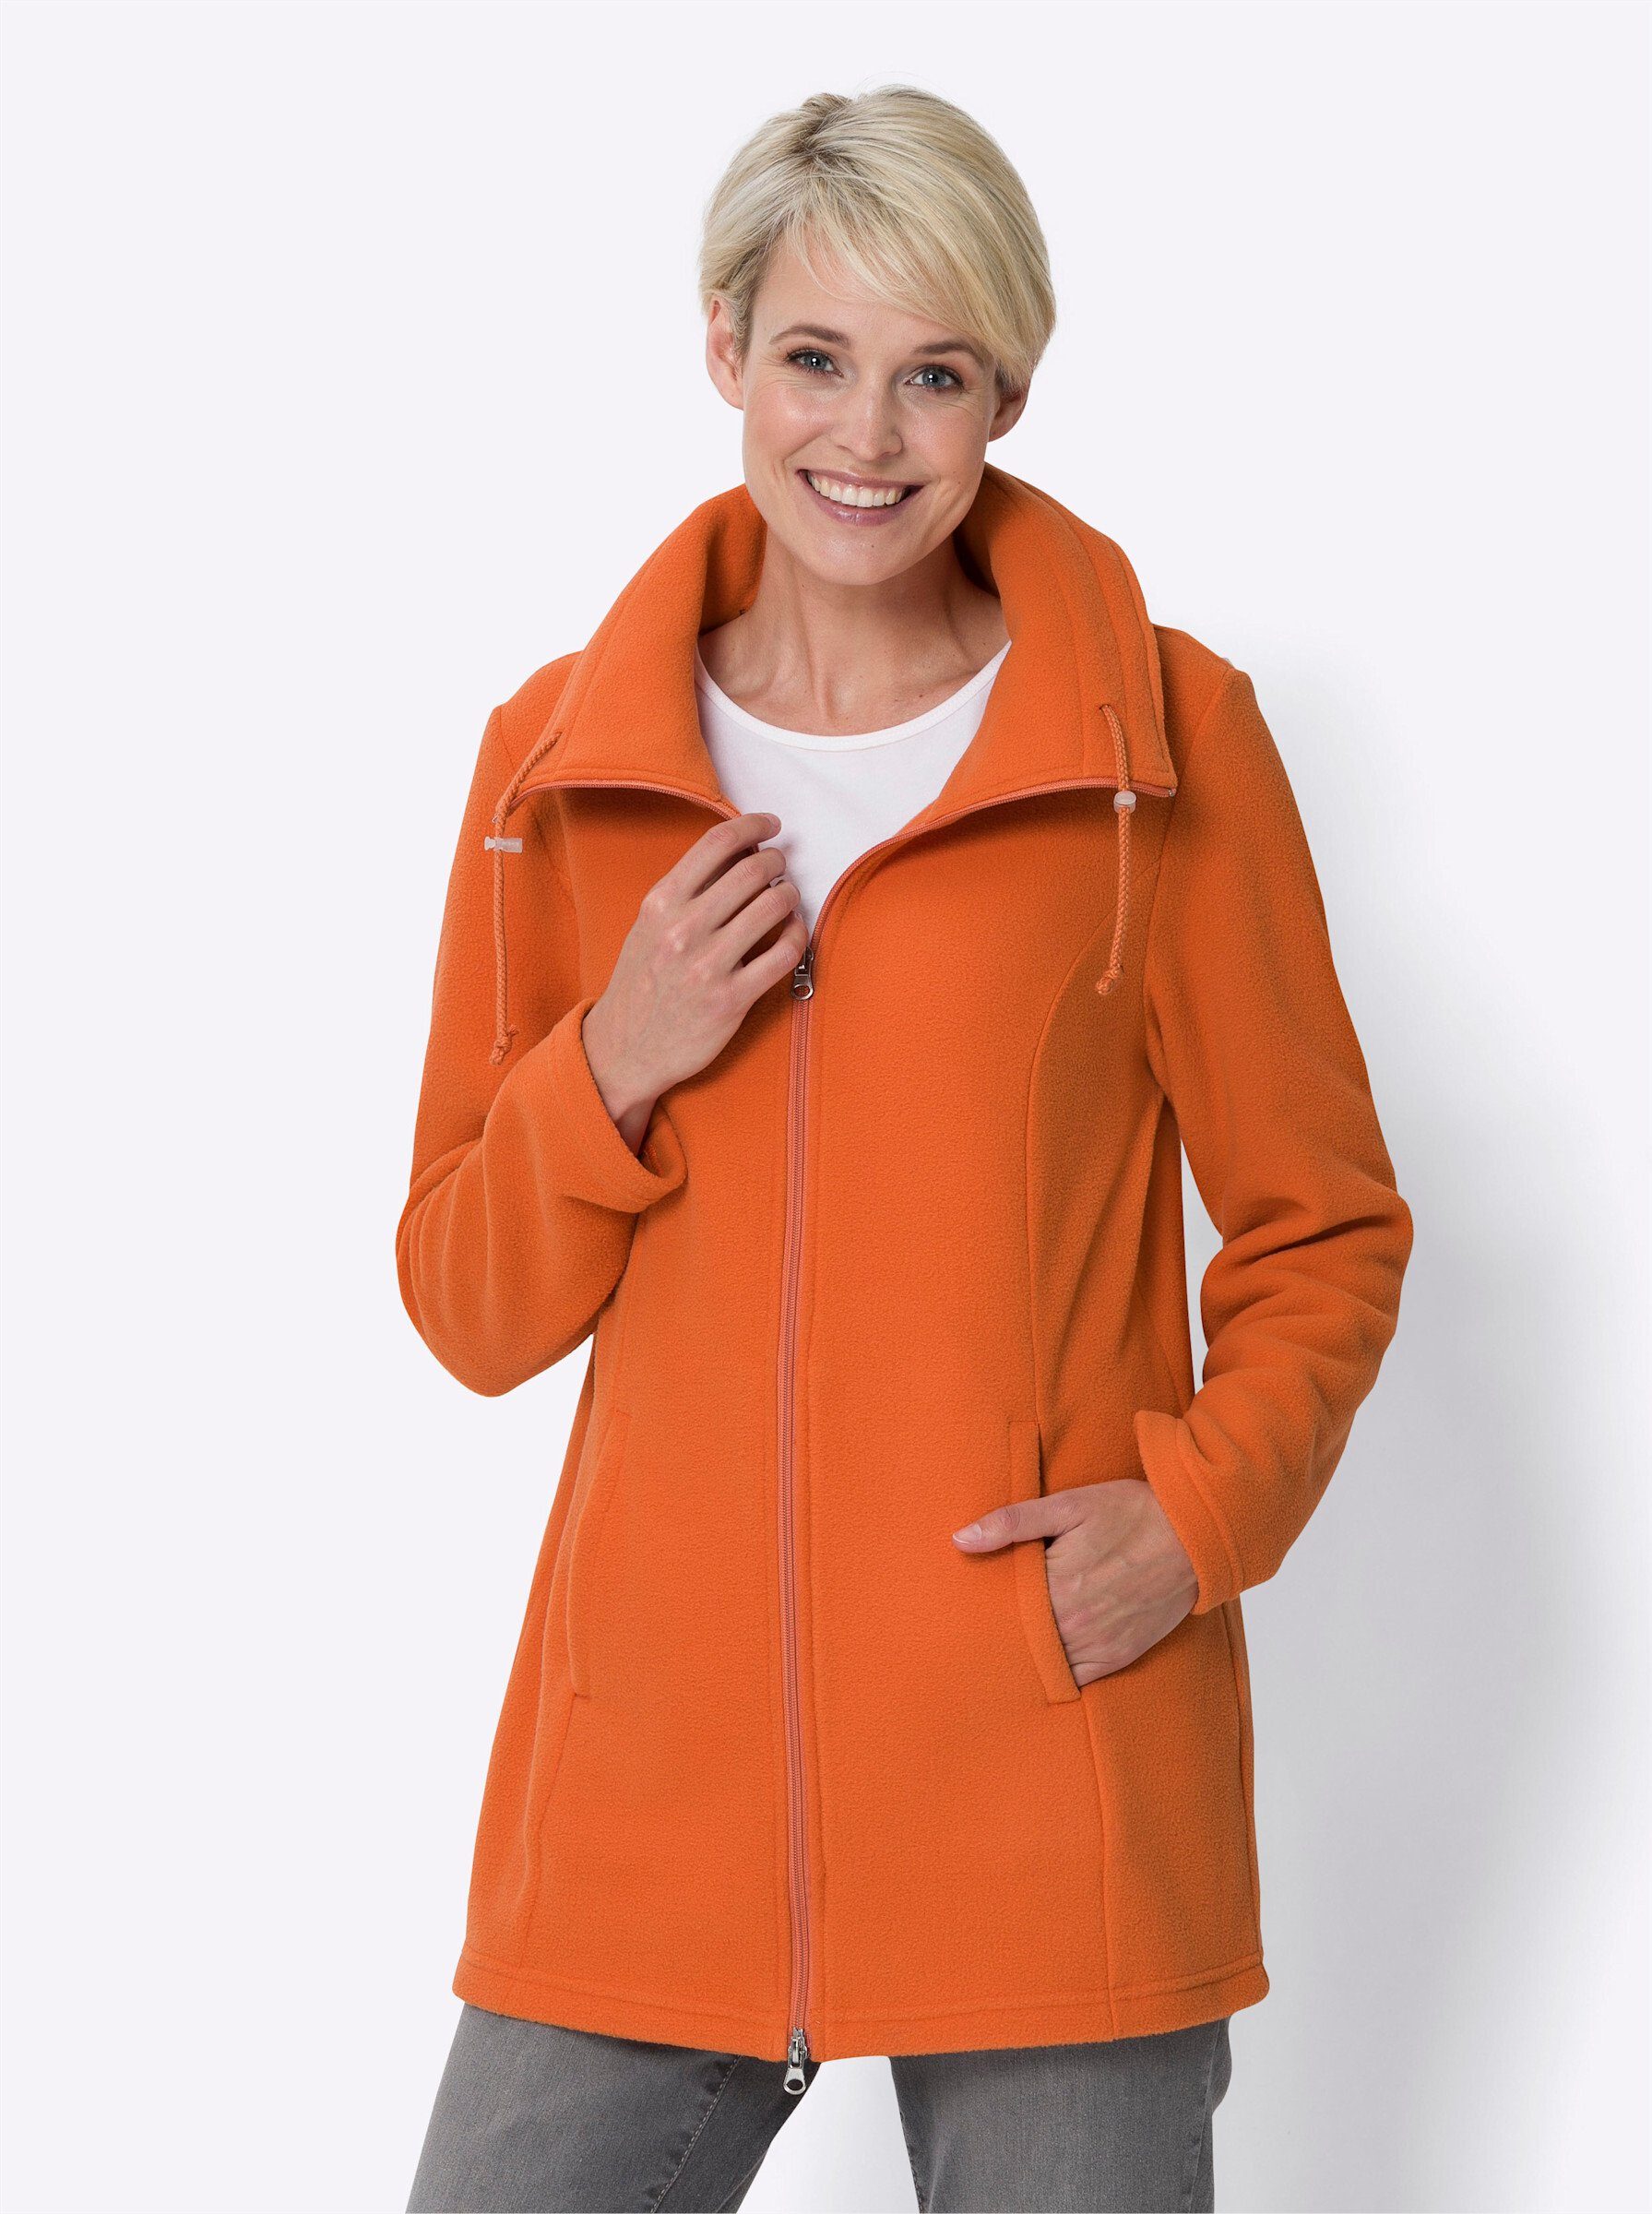 Orange Jacken für Damen online kaufen | OTTO